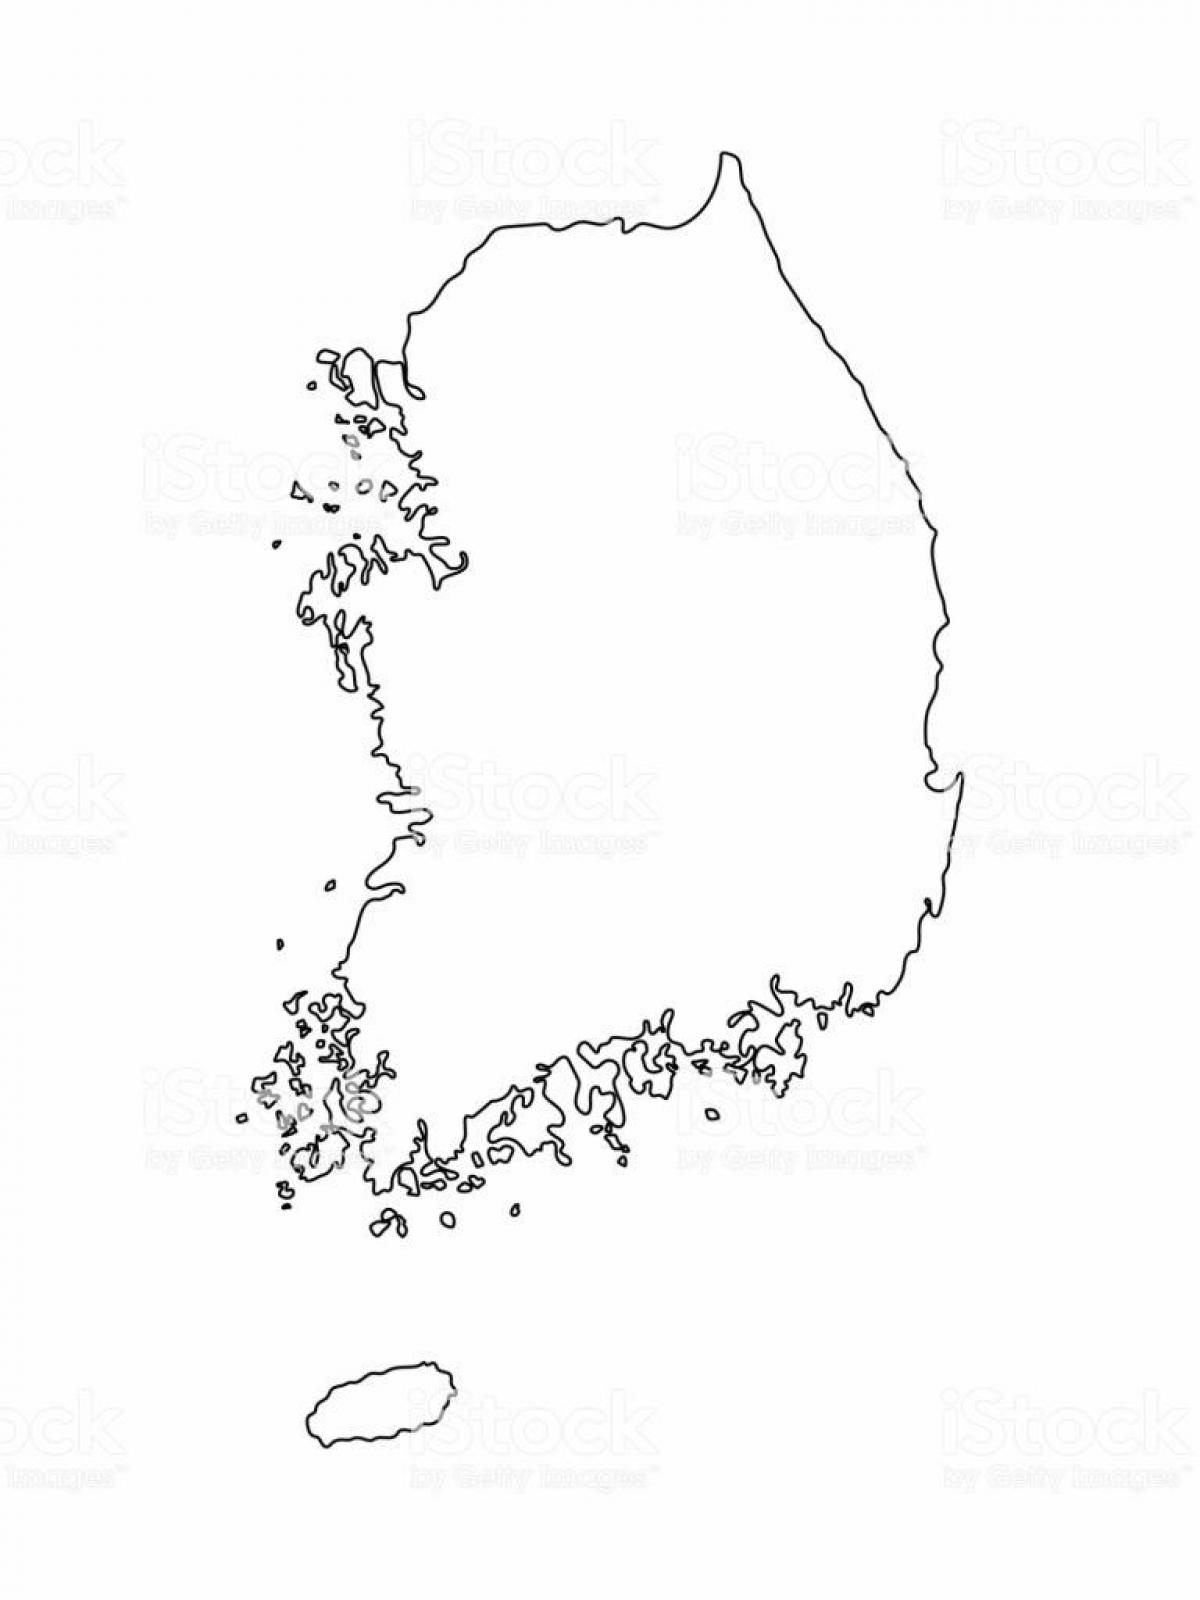 Pusta mapa Korei Południowej (ROK)